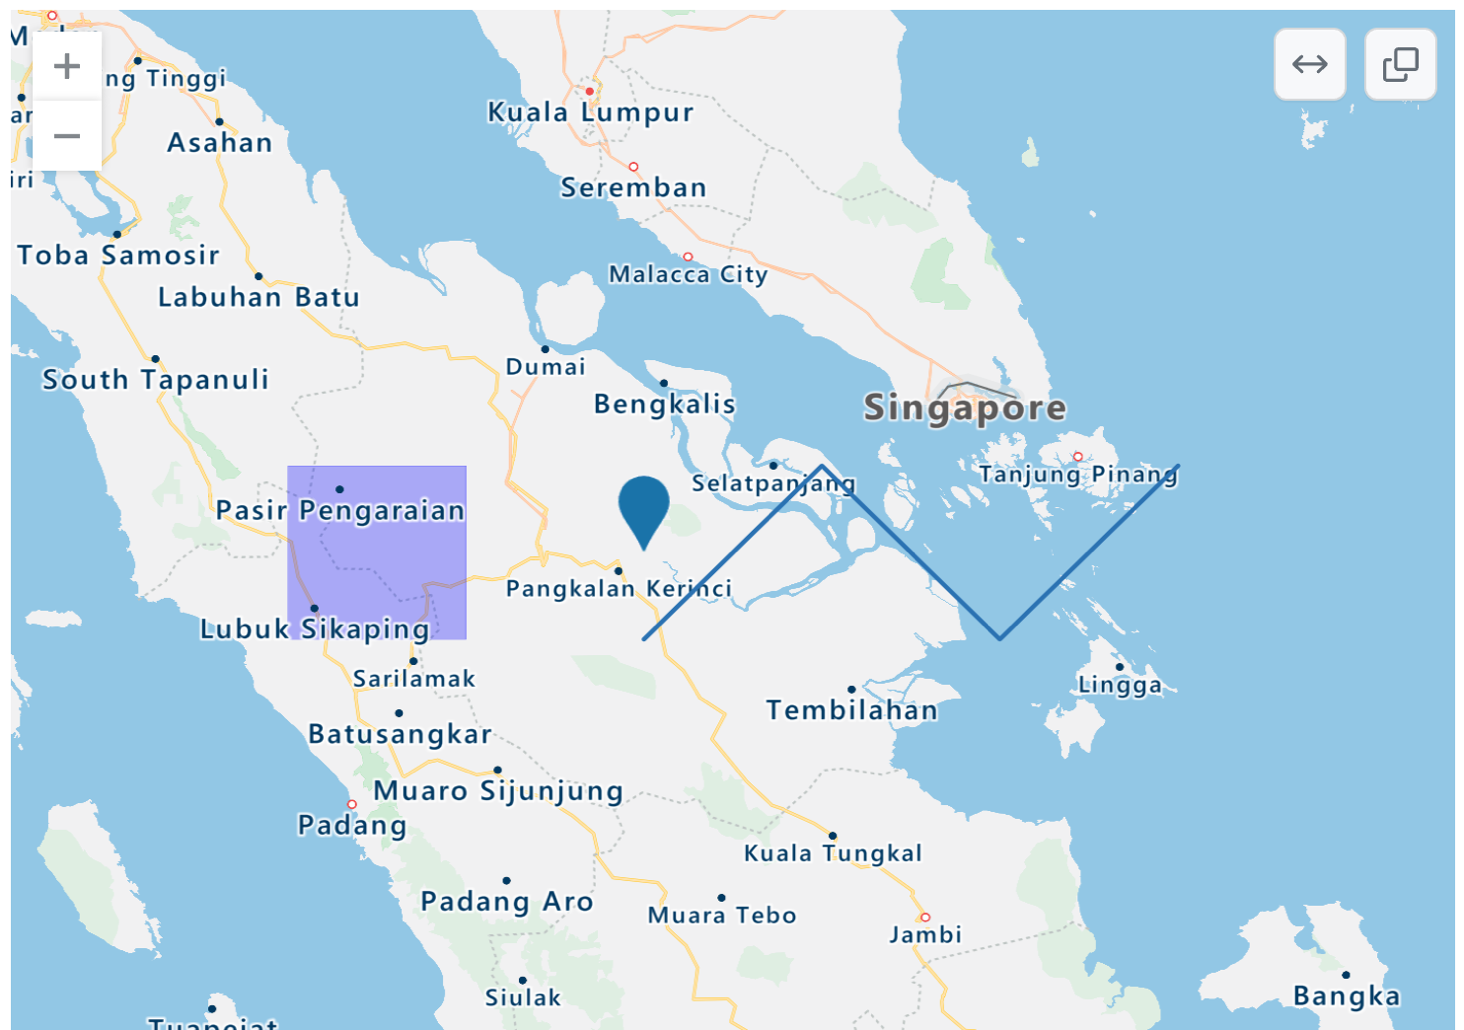 呈现的印度尼西亚西部以及新加坡和马来西亚部分地区的 TopoJSON 地图的屏幕截图，其中包含蓝点、紫色矩形覆盖和蓝色曲折线。